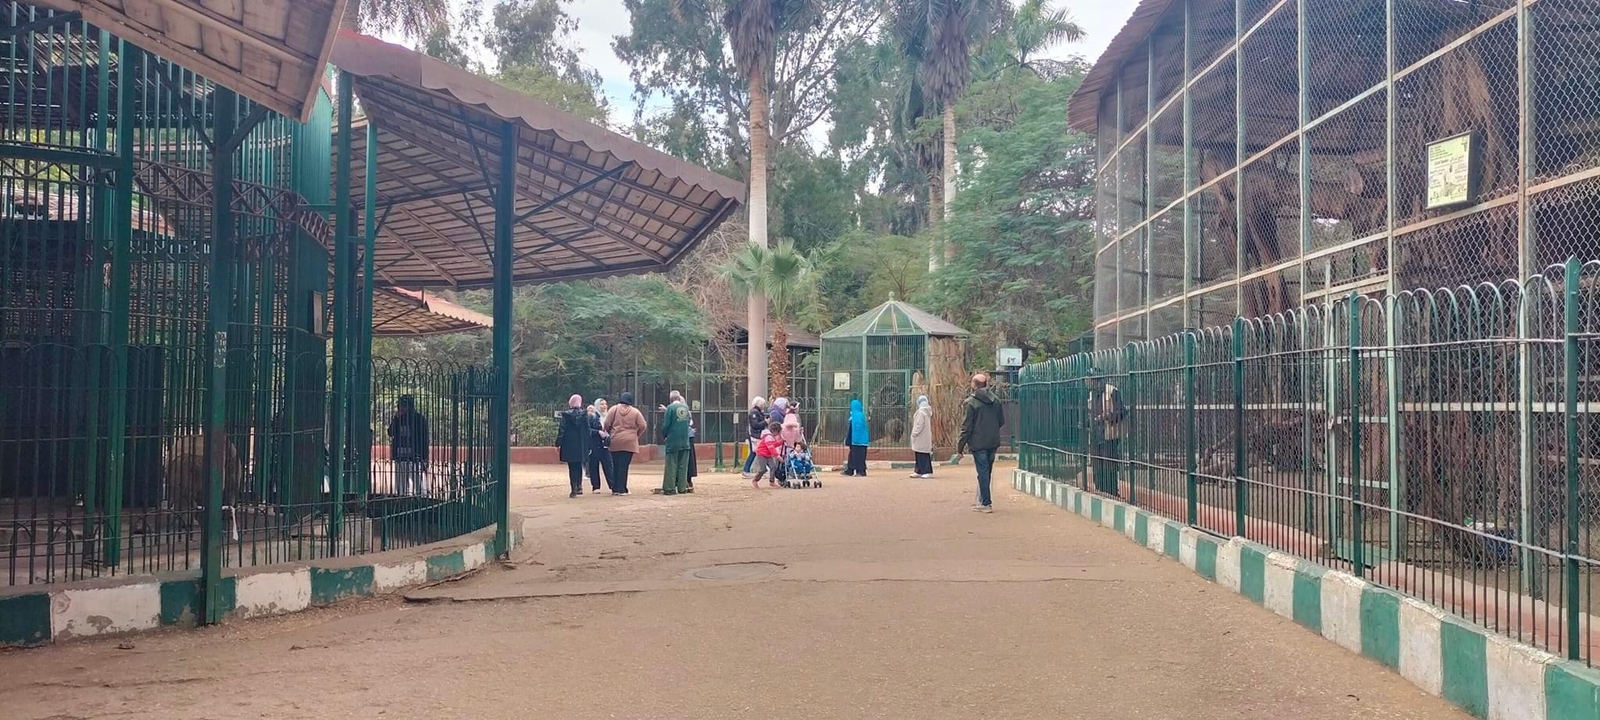 حديقة الحيوان تواصل استقبال الزائرين قبل انتهاء اجازة نصف العام